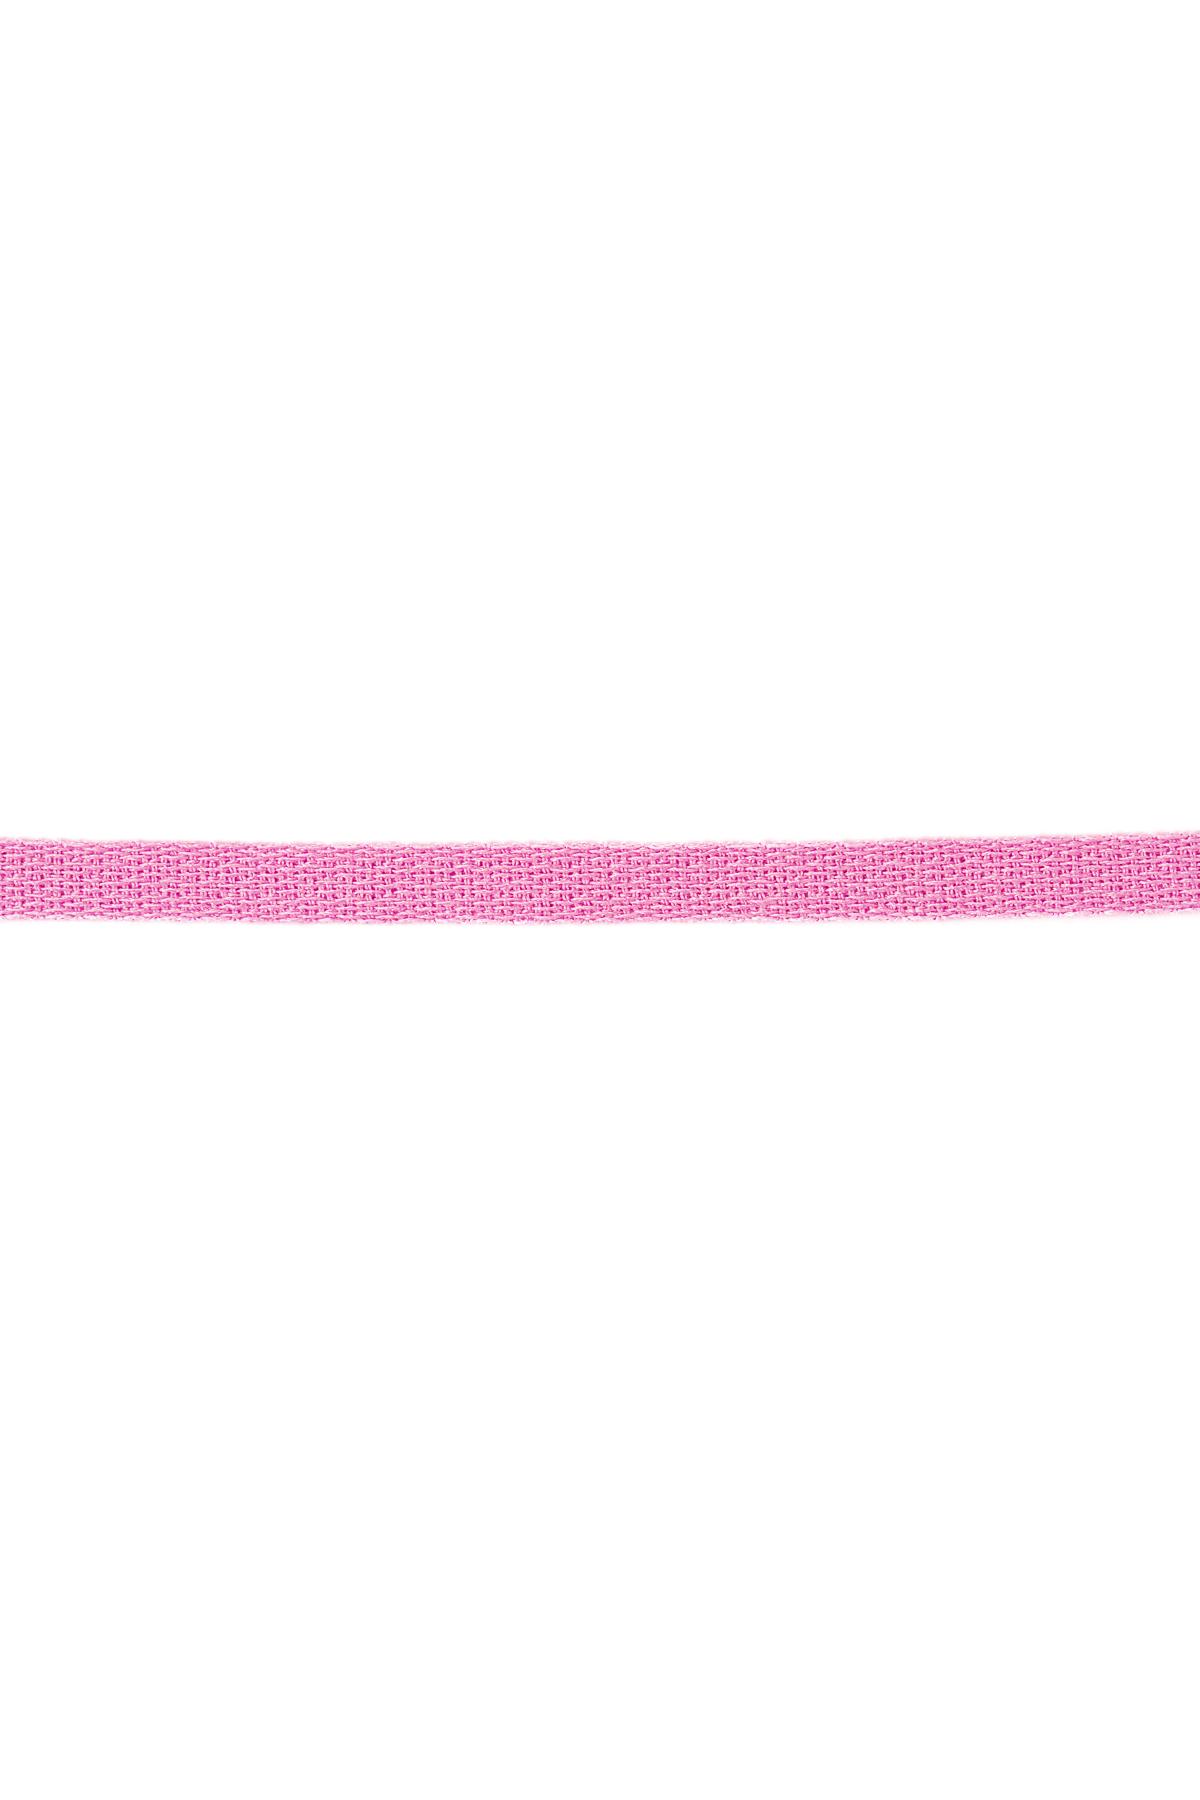 Armbandband einfarbig Rosa Polyester